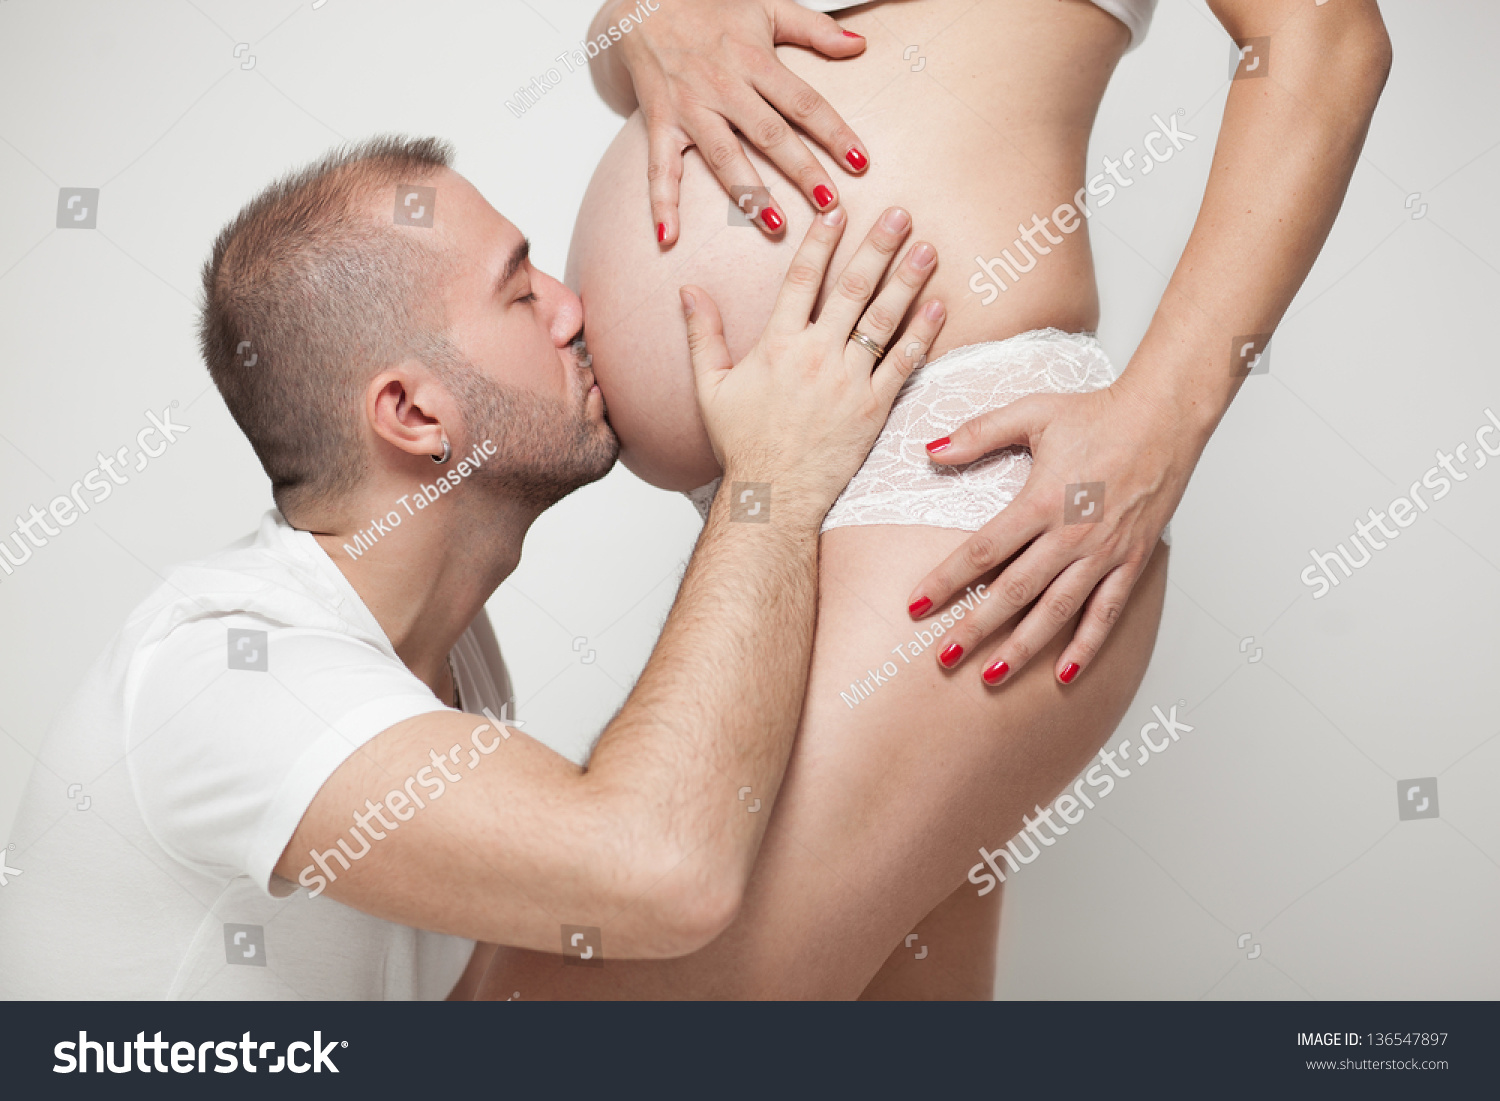 Целует беременный животик